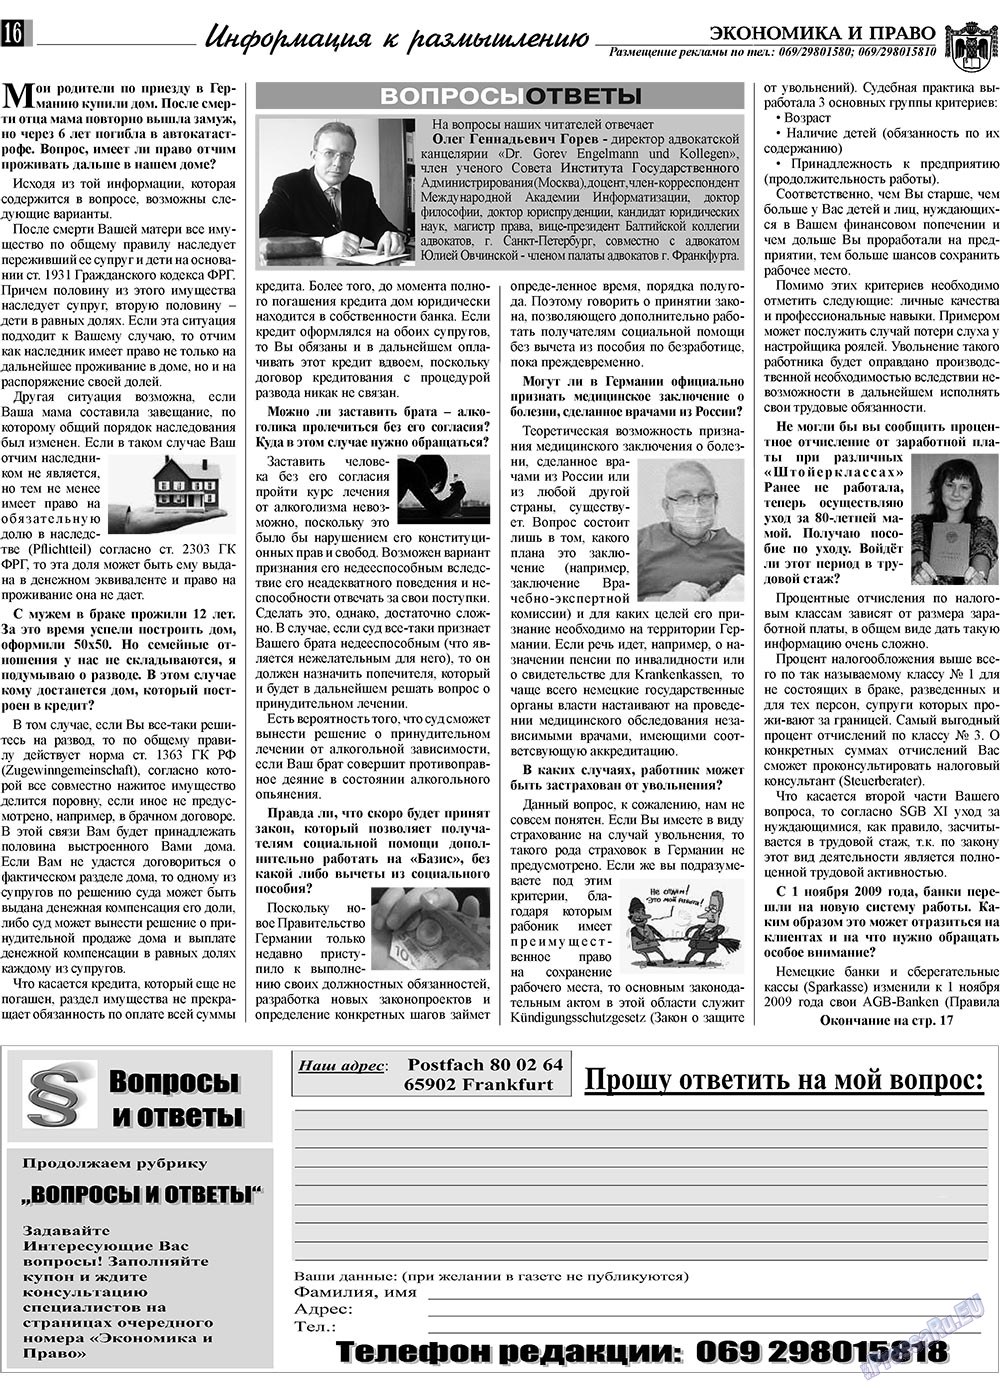 Экономика и право, газета. 2009 №12 стр.16